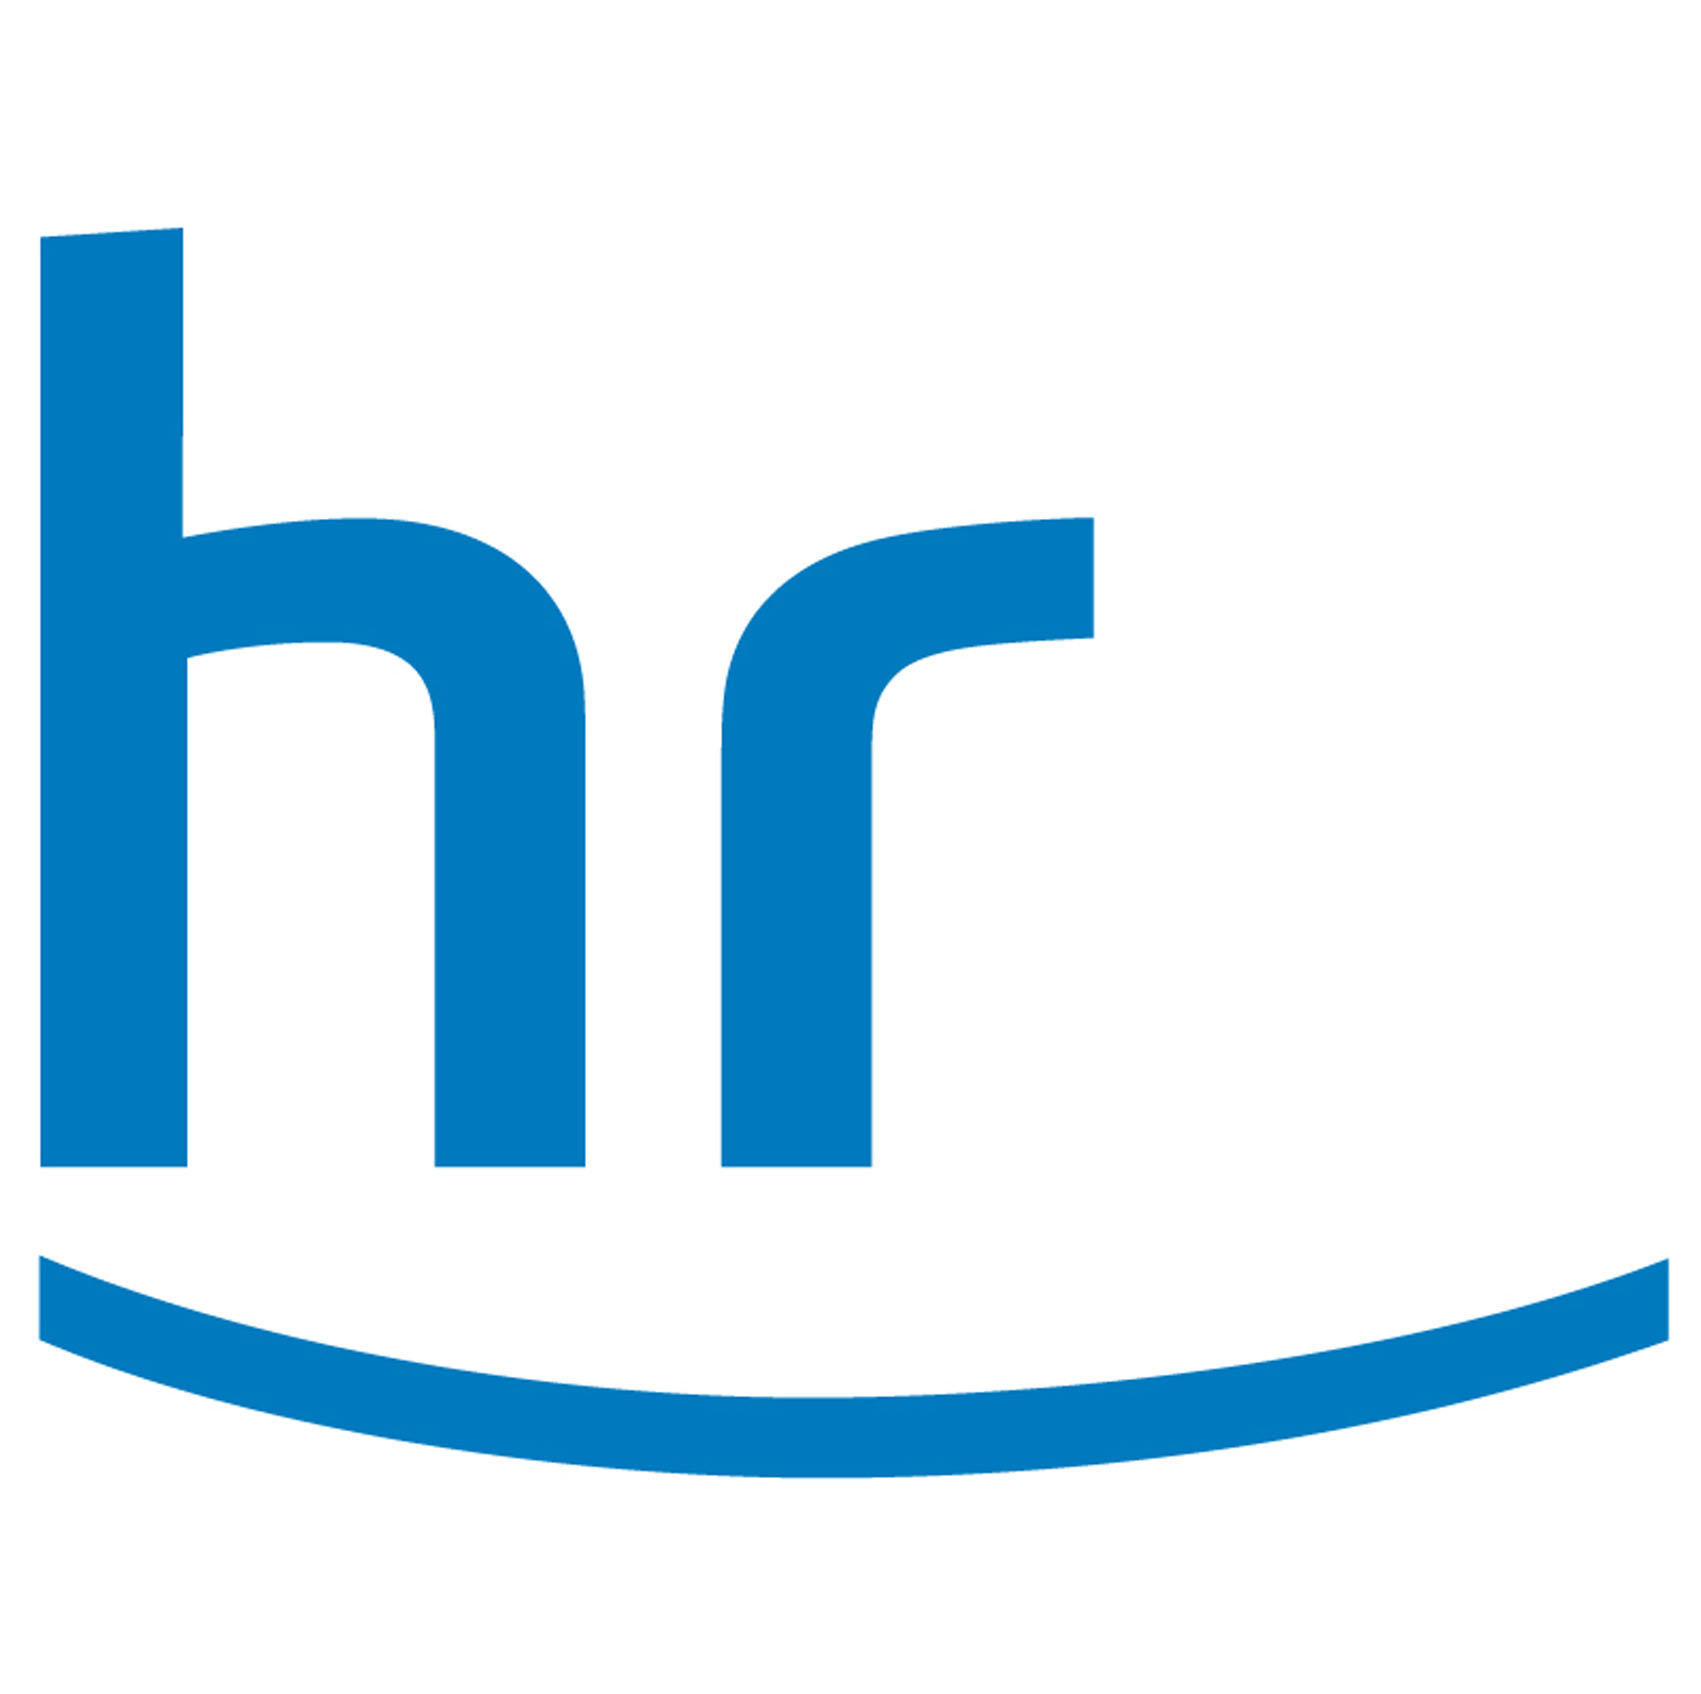 Logo Hessischer Rundfunk